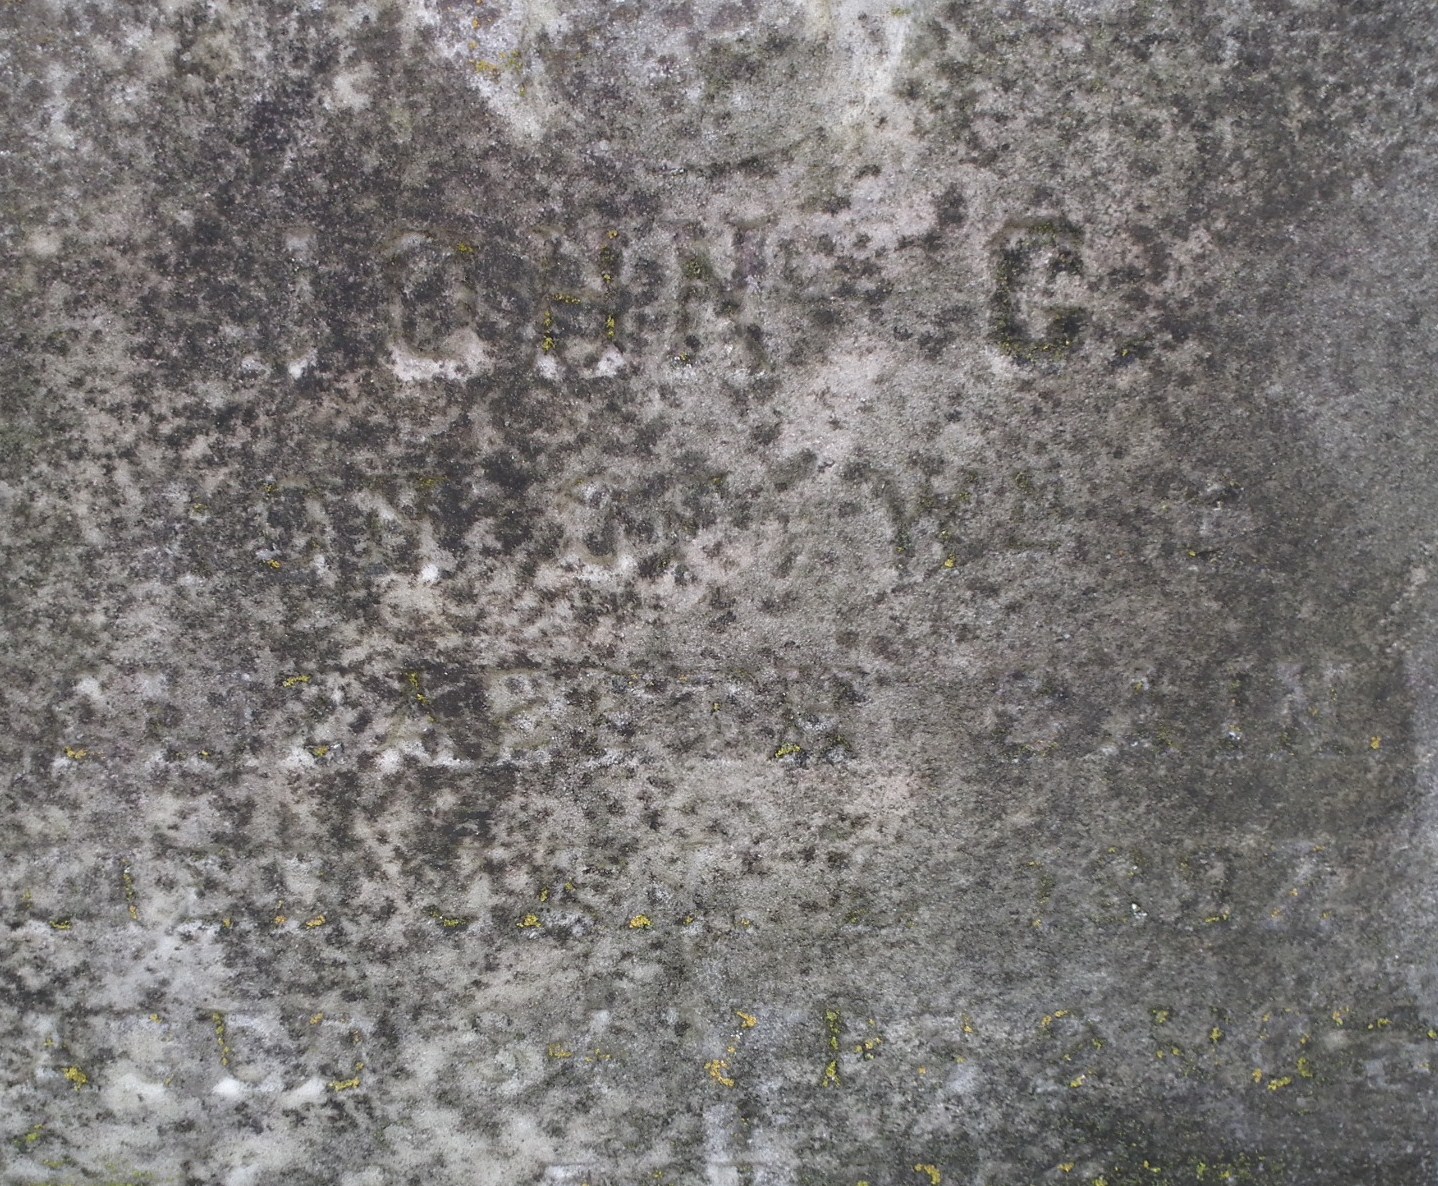 Cain_John-C(1852-1887)-gravemarker